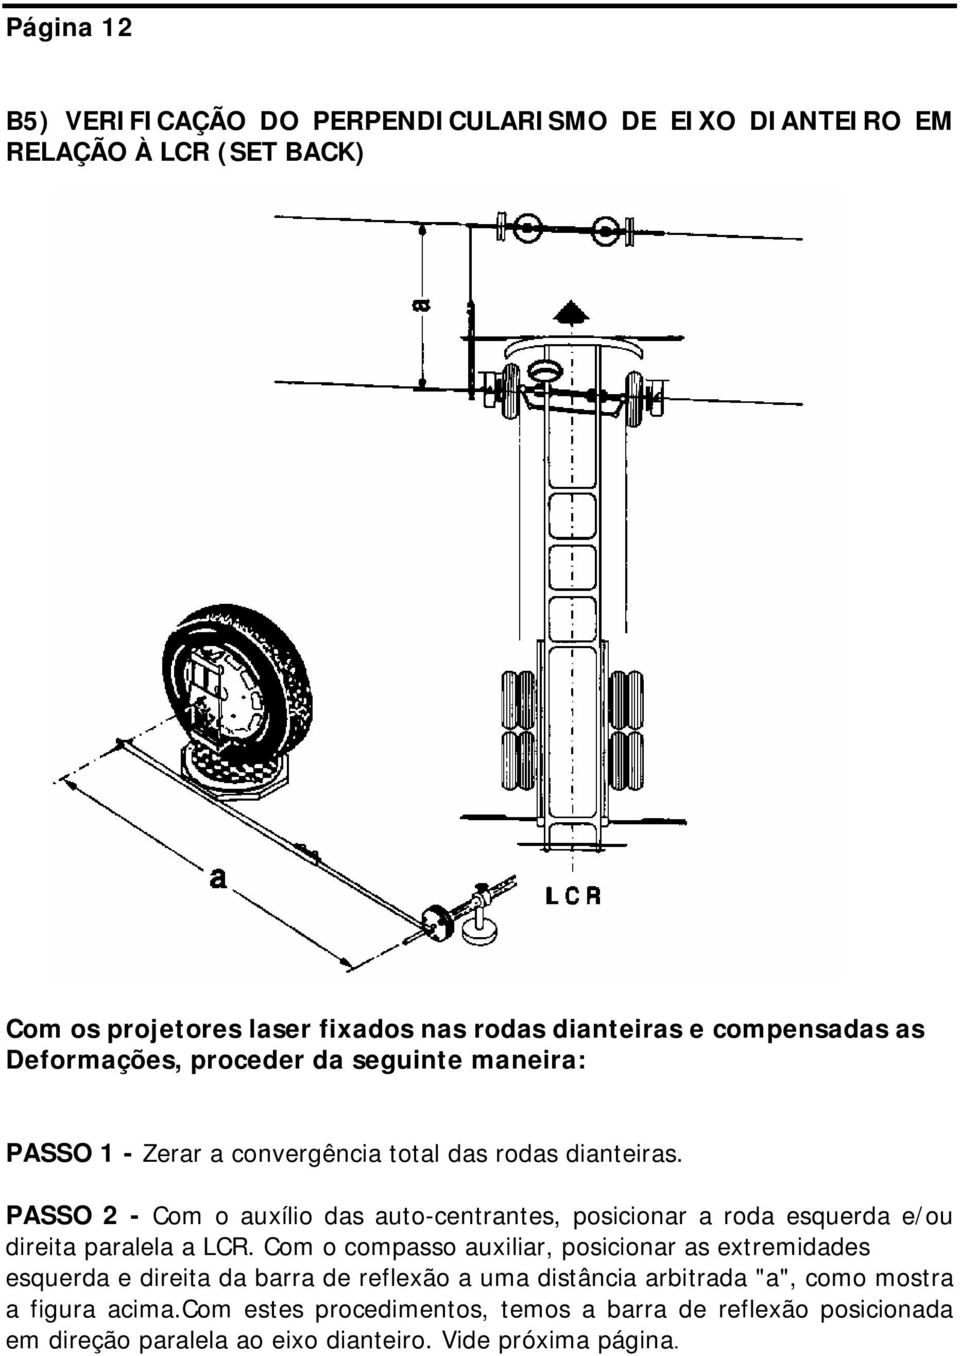 PASSO 2 - Com o auxílio das auto-centrantes, posicionar a roda esquerda e/ou direita paralela a LCR.